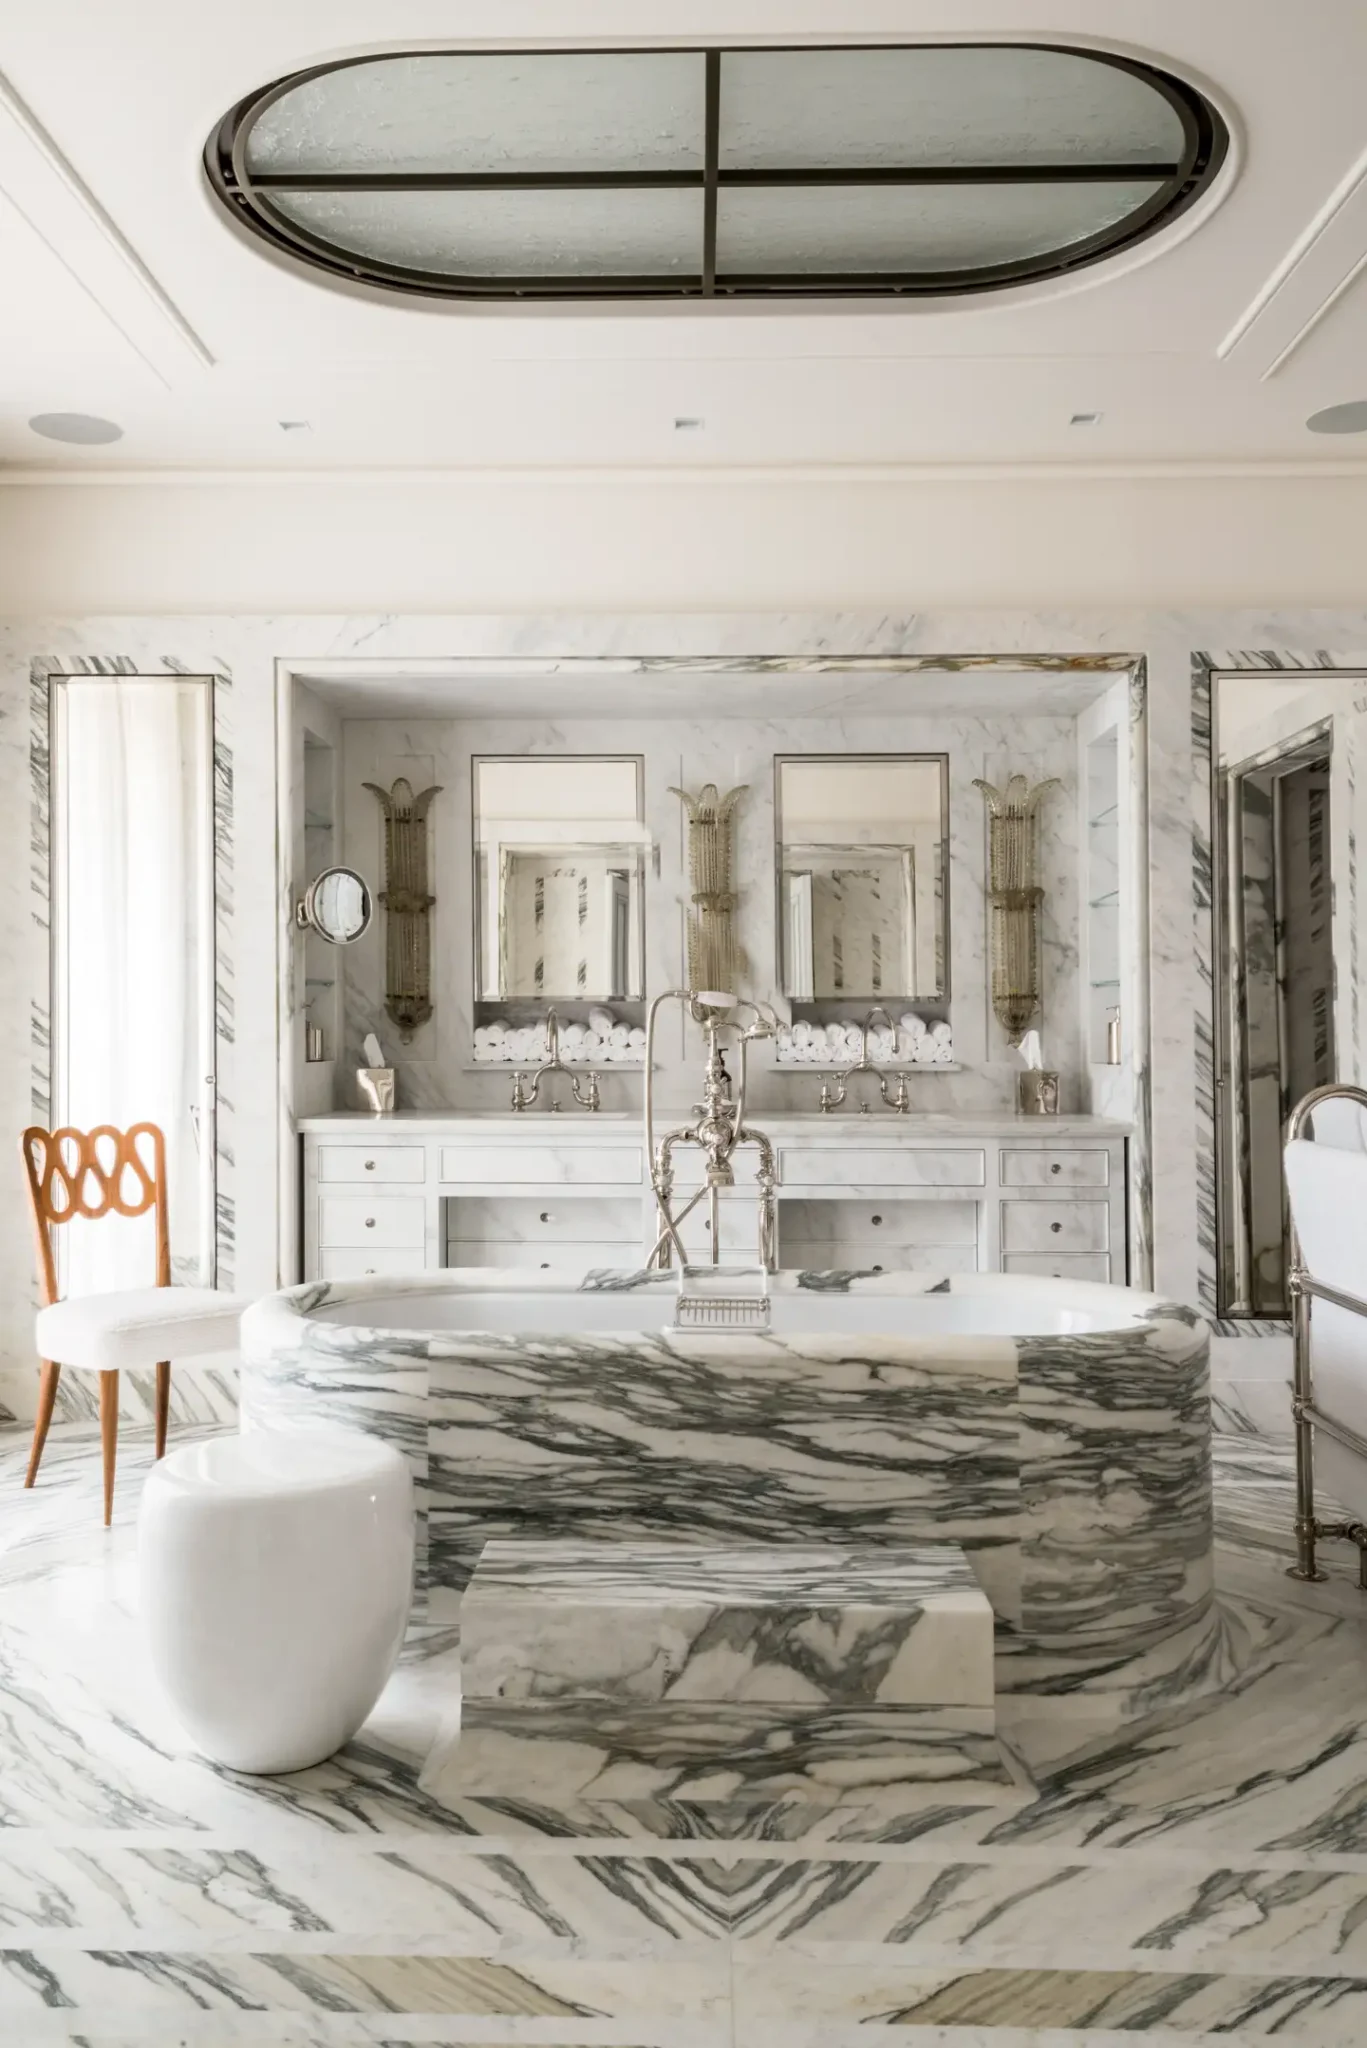 Full marble bathroom